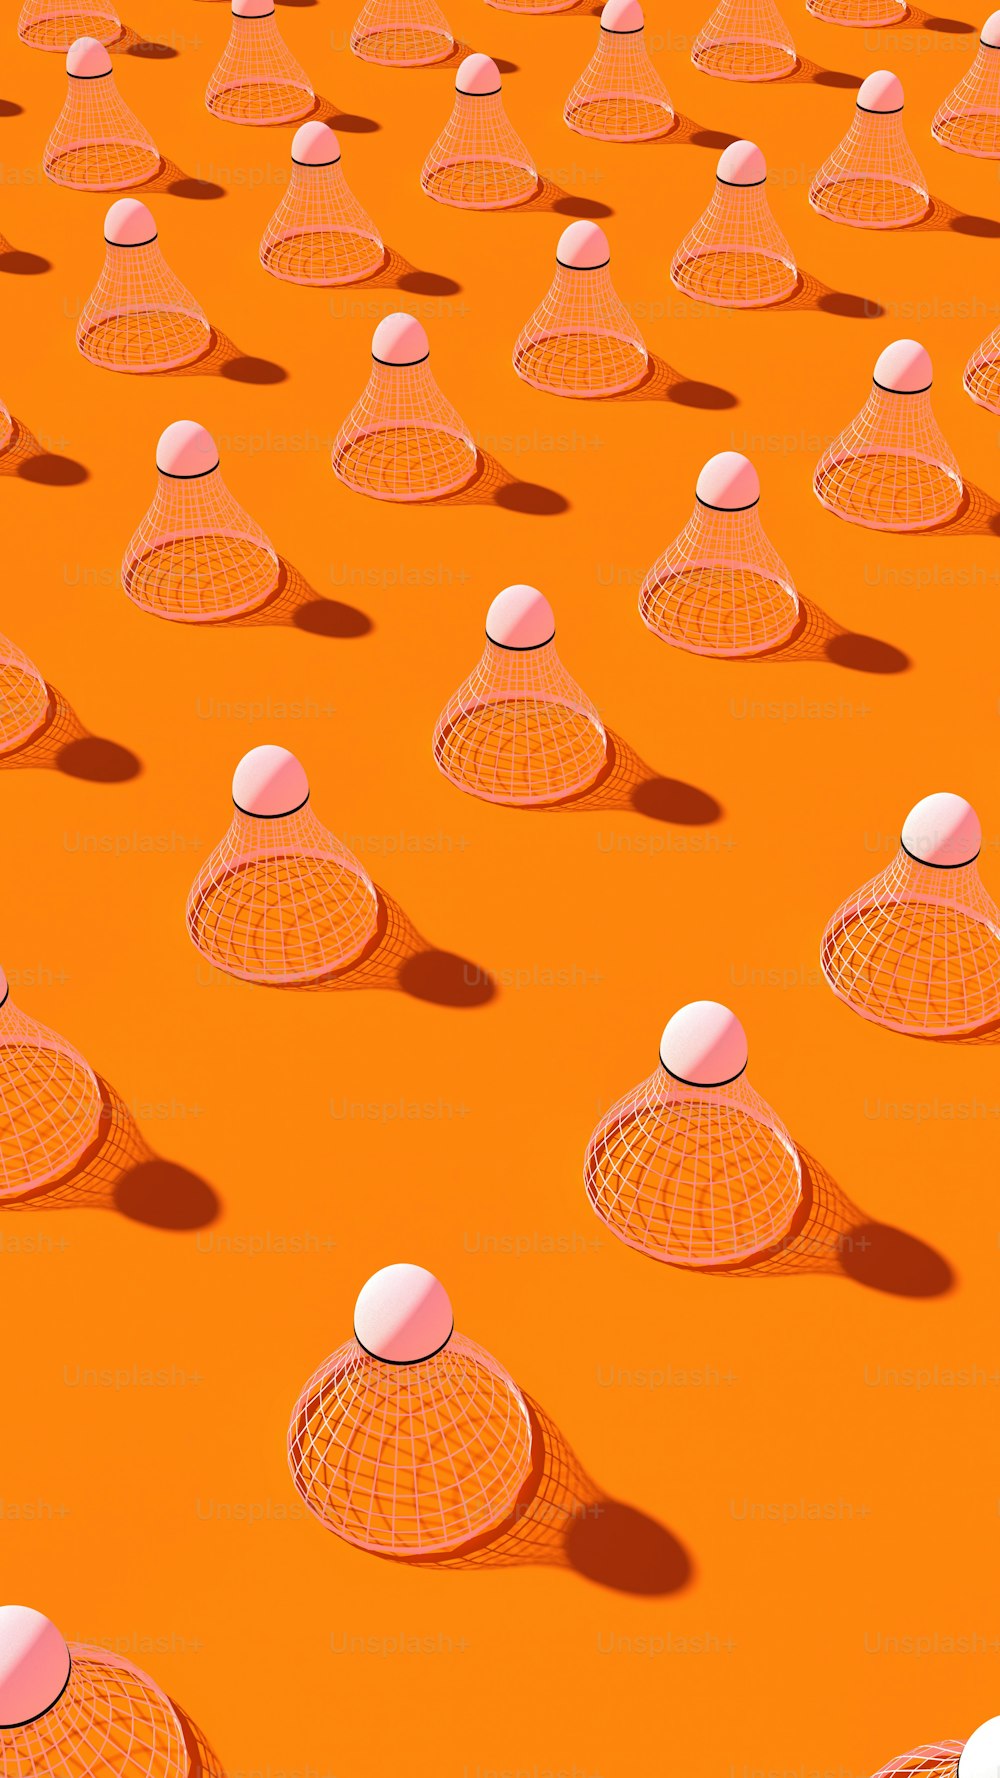 Un grupo de bolas blancas sentadas encima de una superficie naranja